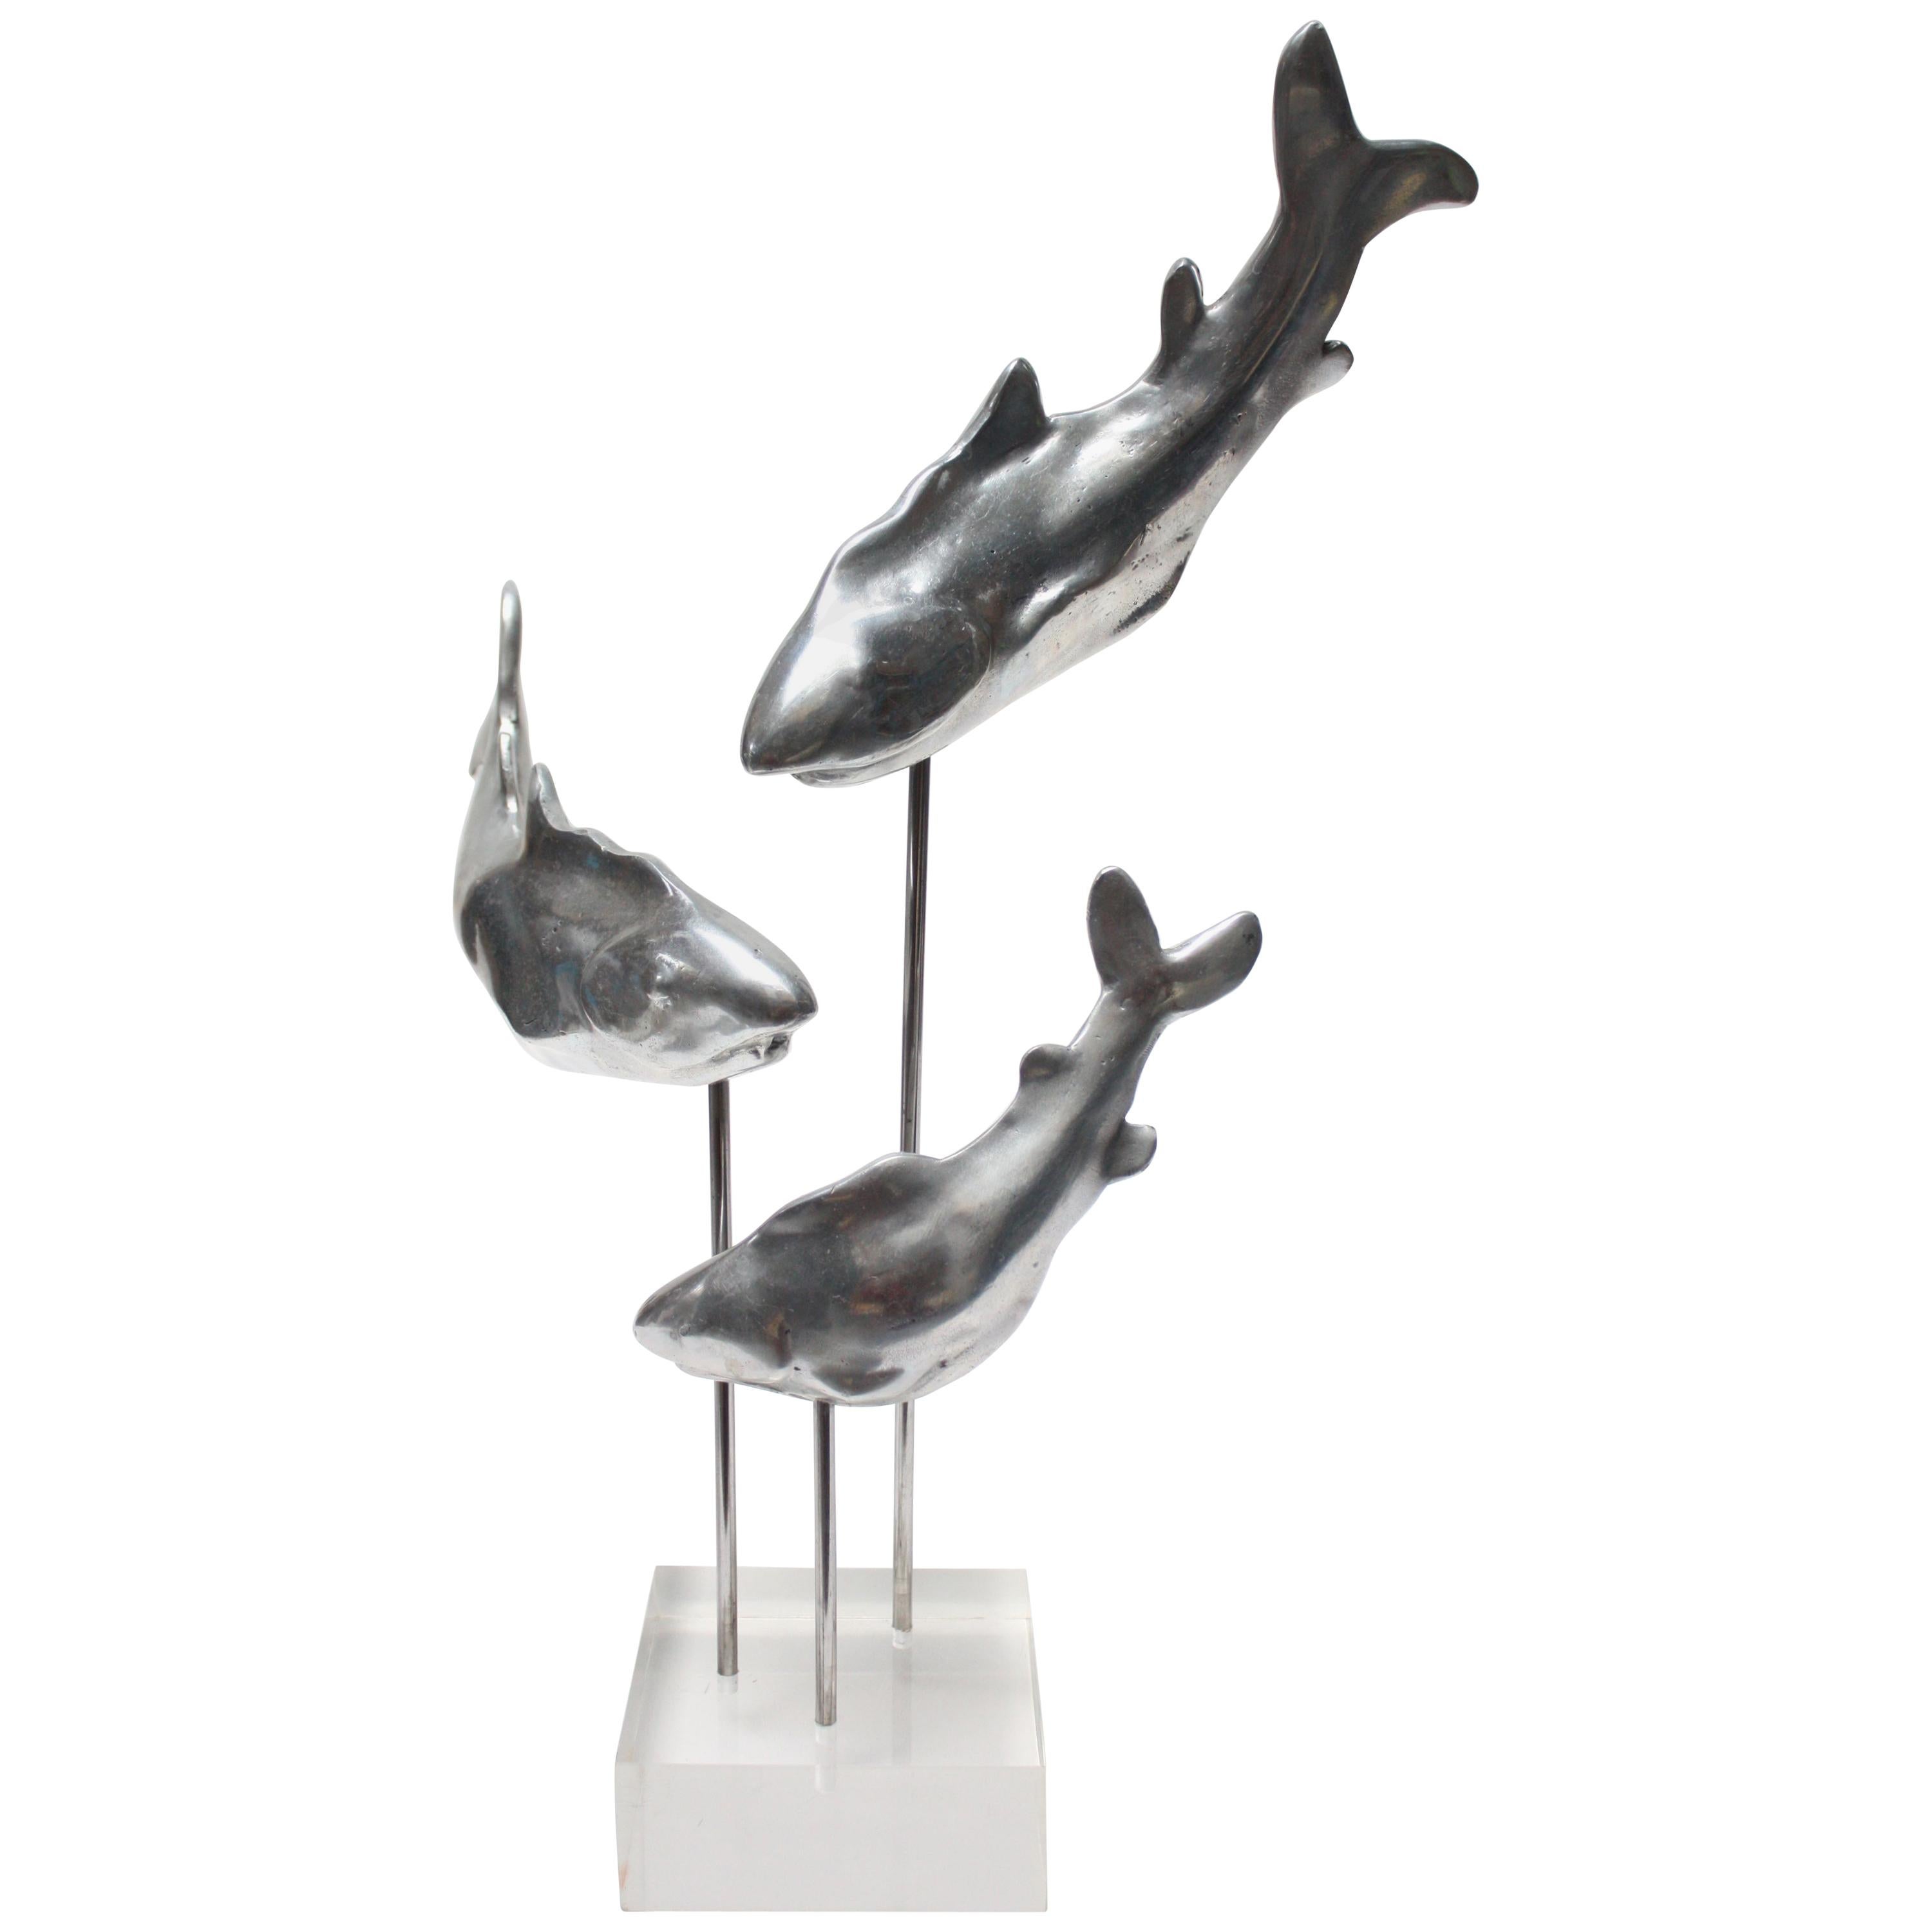 Aluminium- und Lucite-Skulptur einer Reihe von Sharks